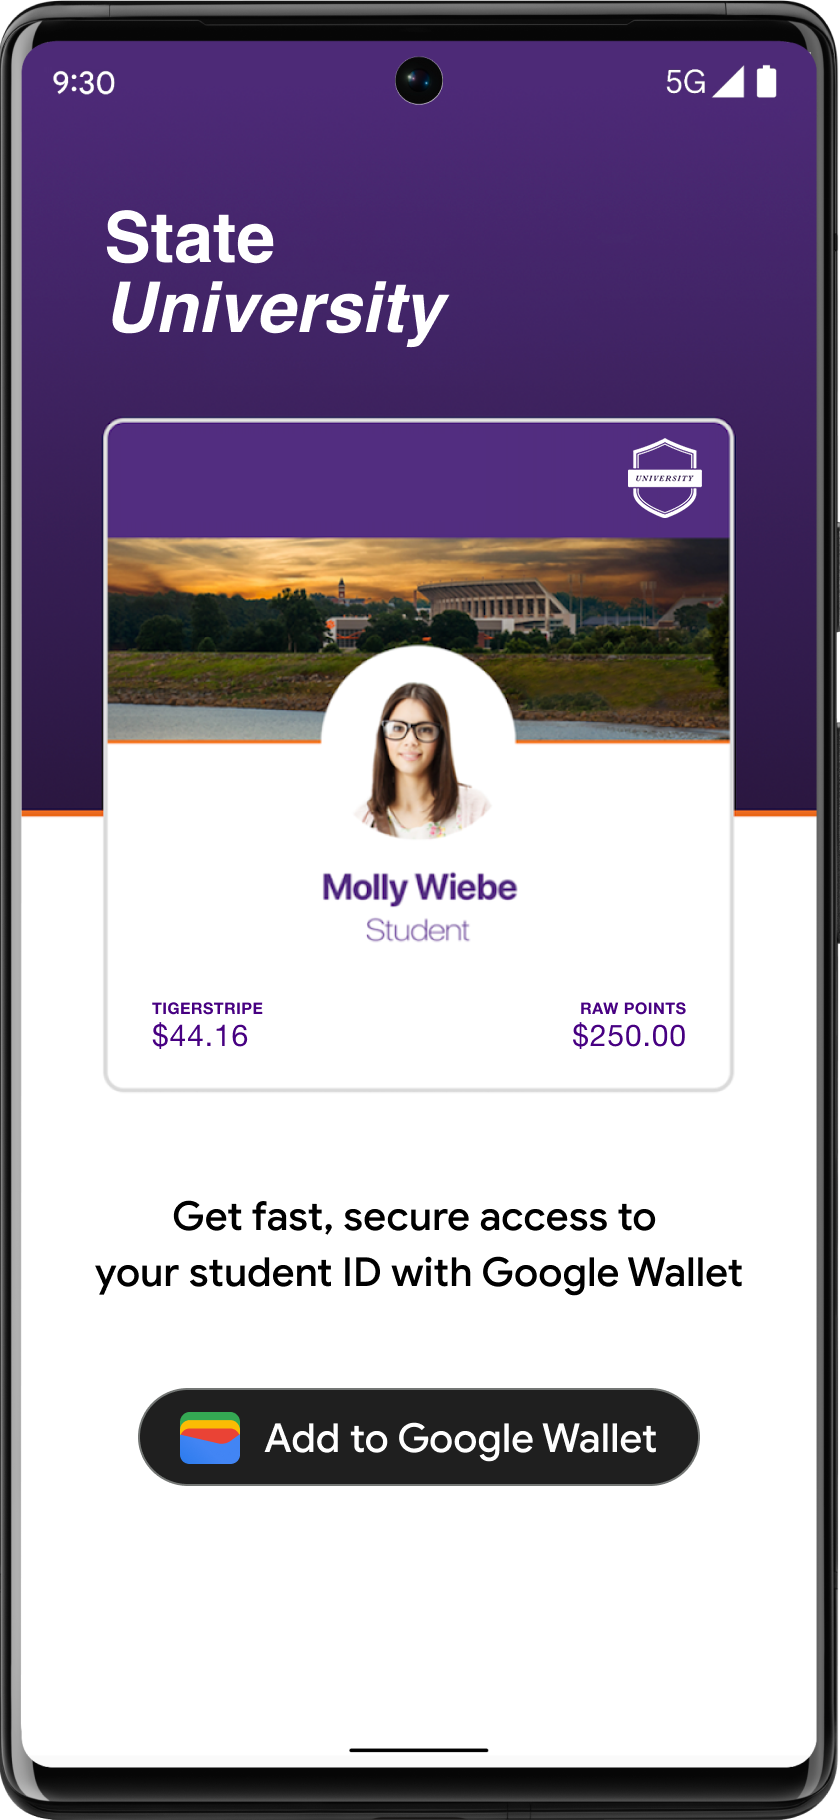 位於學生帳戶應用程式醒目位置的「新增至 Google 錢包」按鈕。